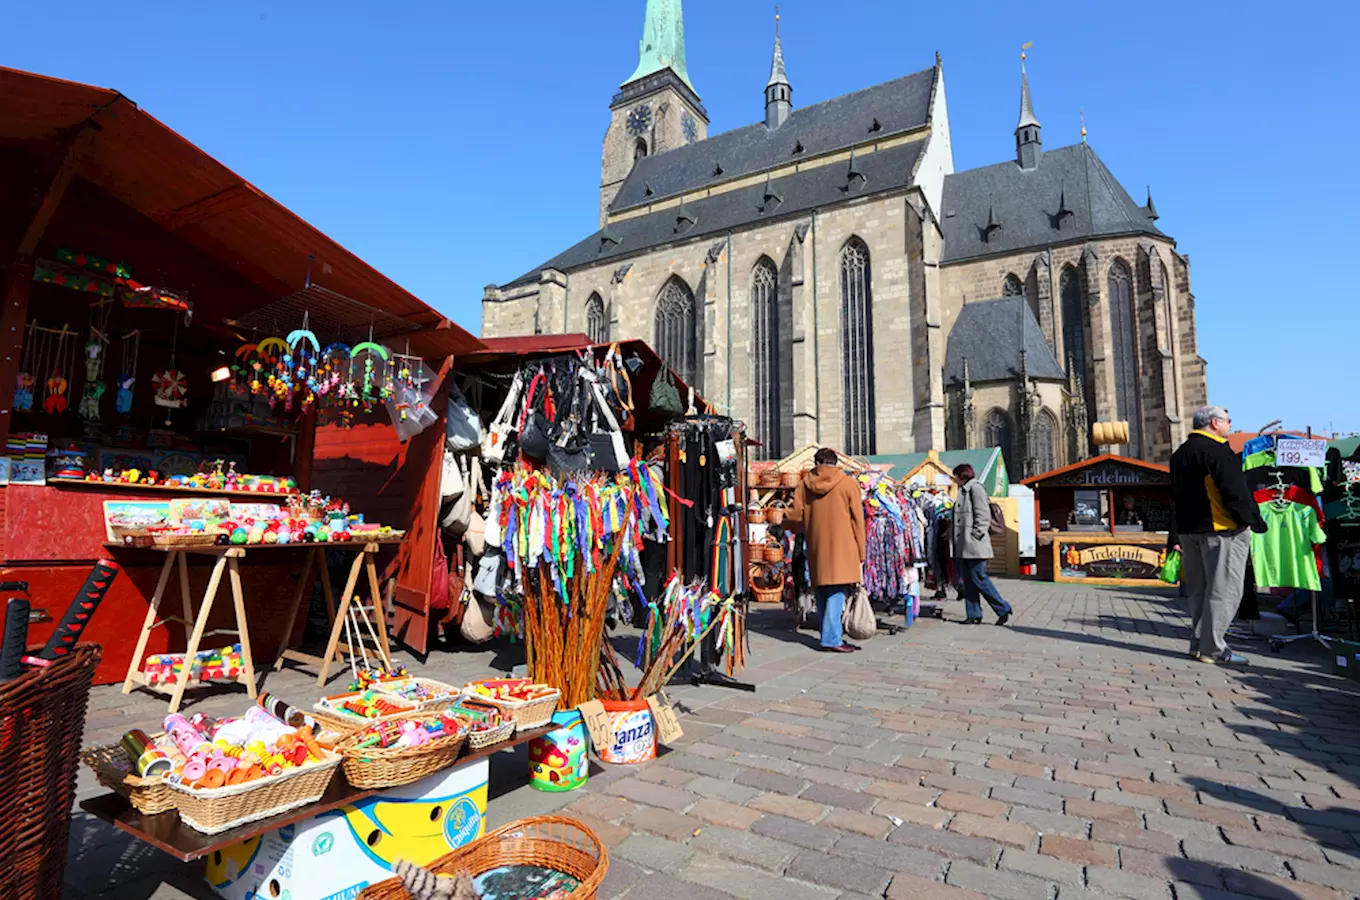 Velikonoce v Plzni budou plné dobrot i tradičních řemesel